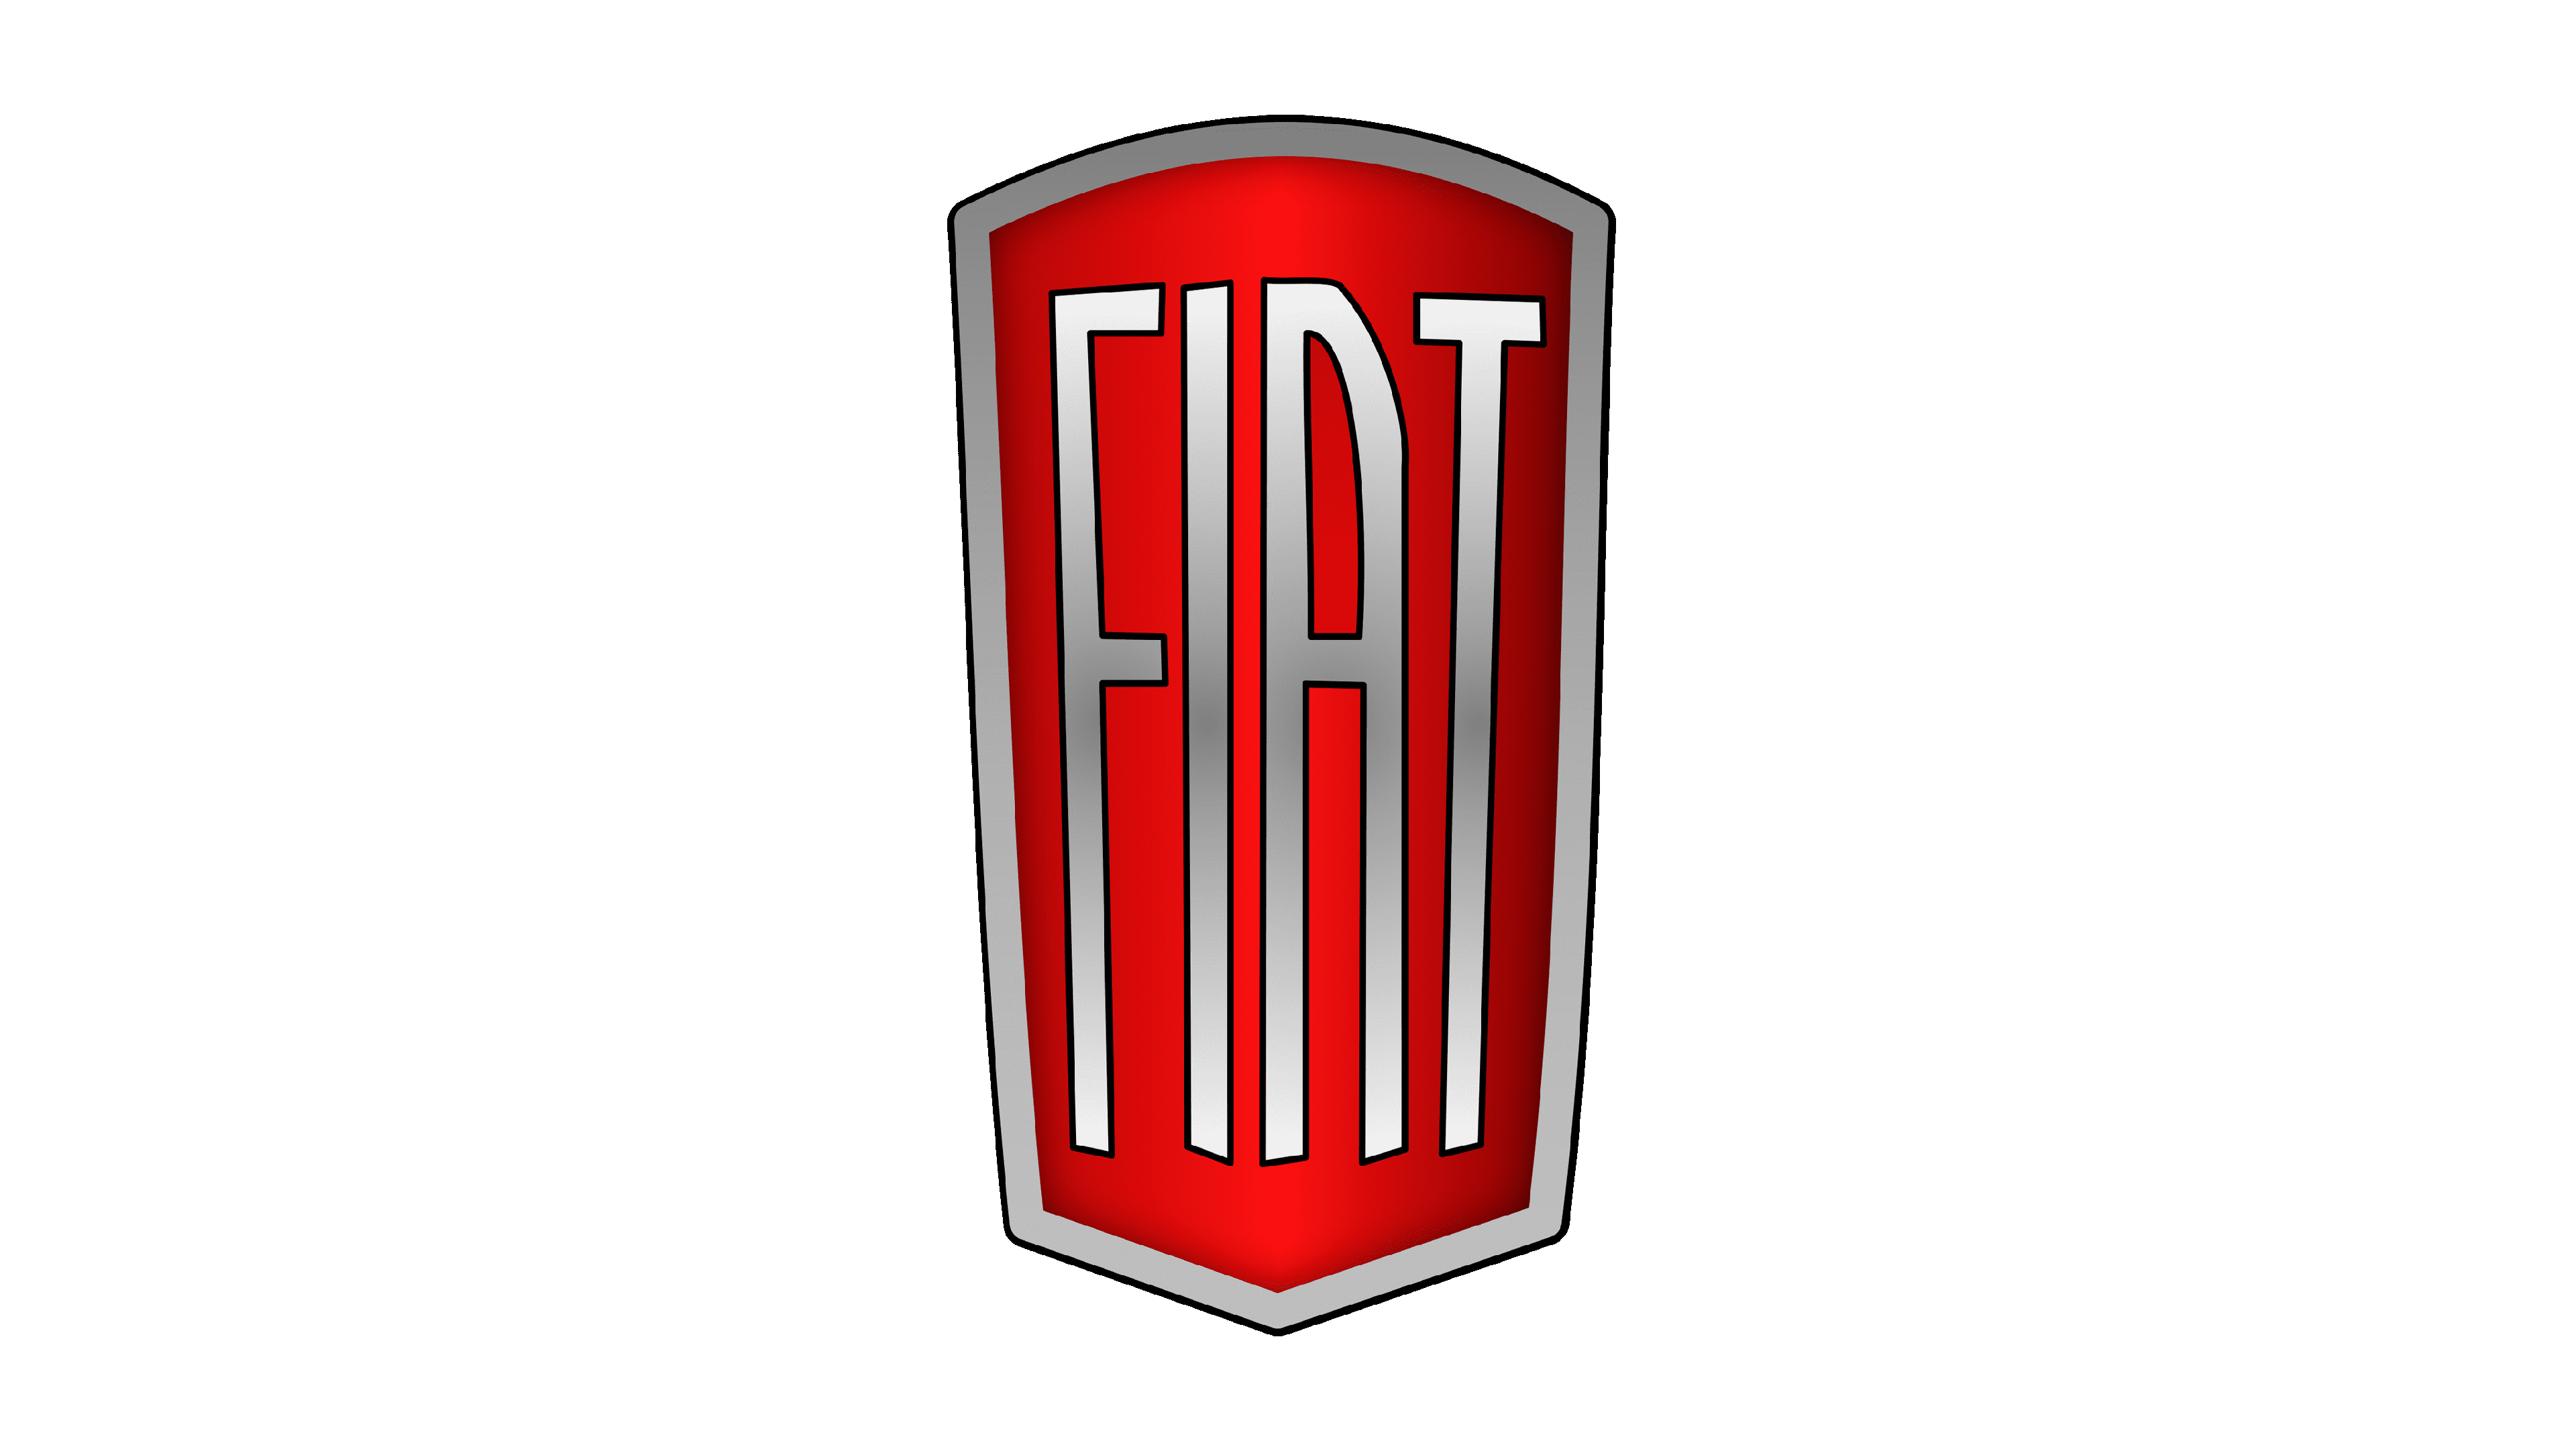 File:Blockbuster logo.svg - Wikipedia